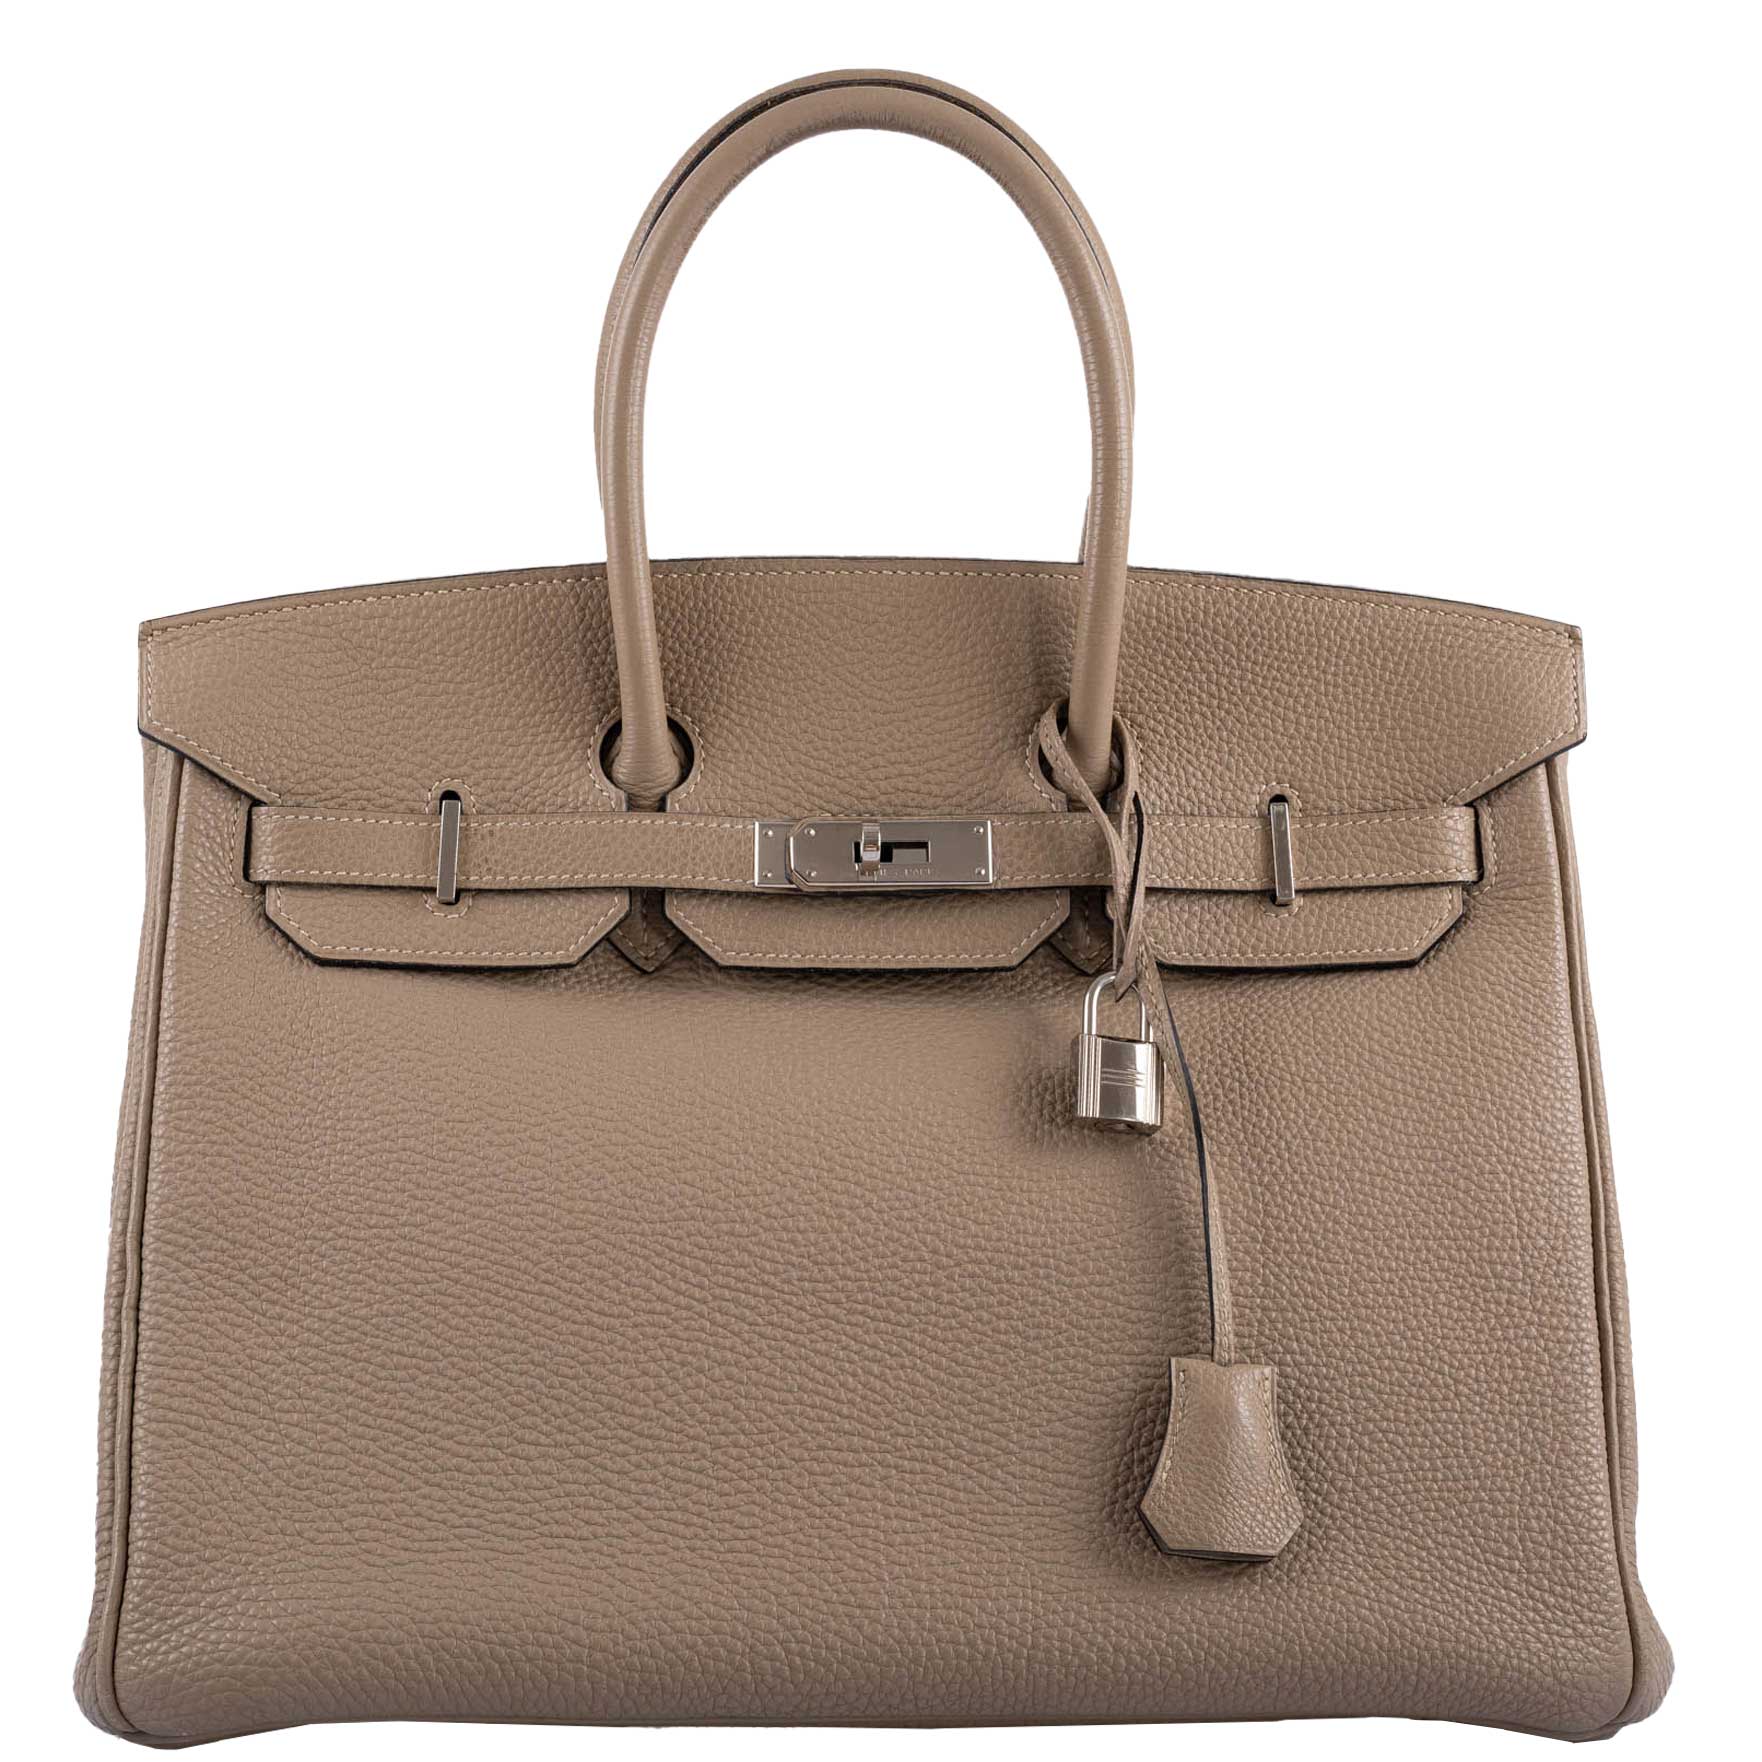 Hermes 35cm Gris Tourterelle Togo Leather Birkin Bag with